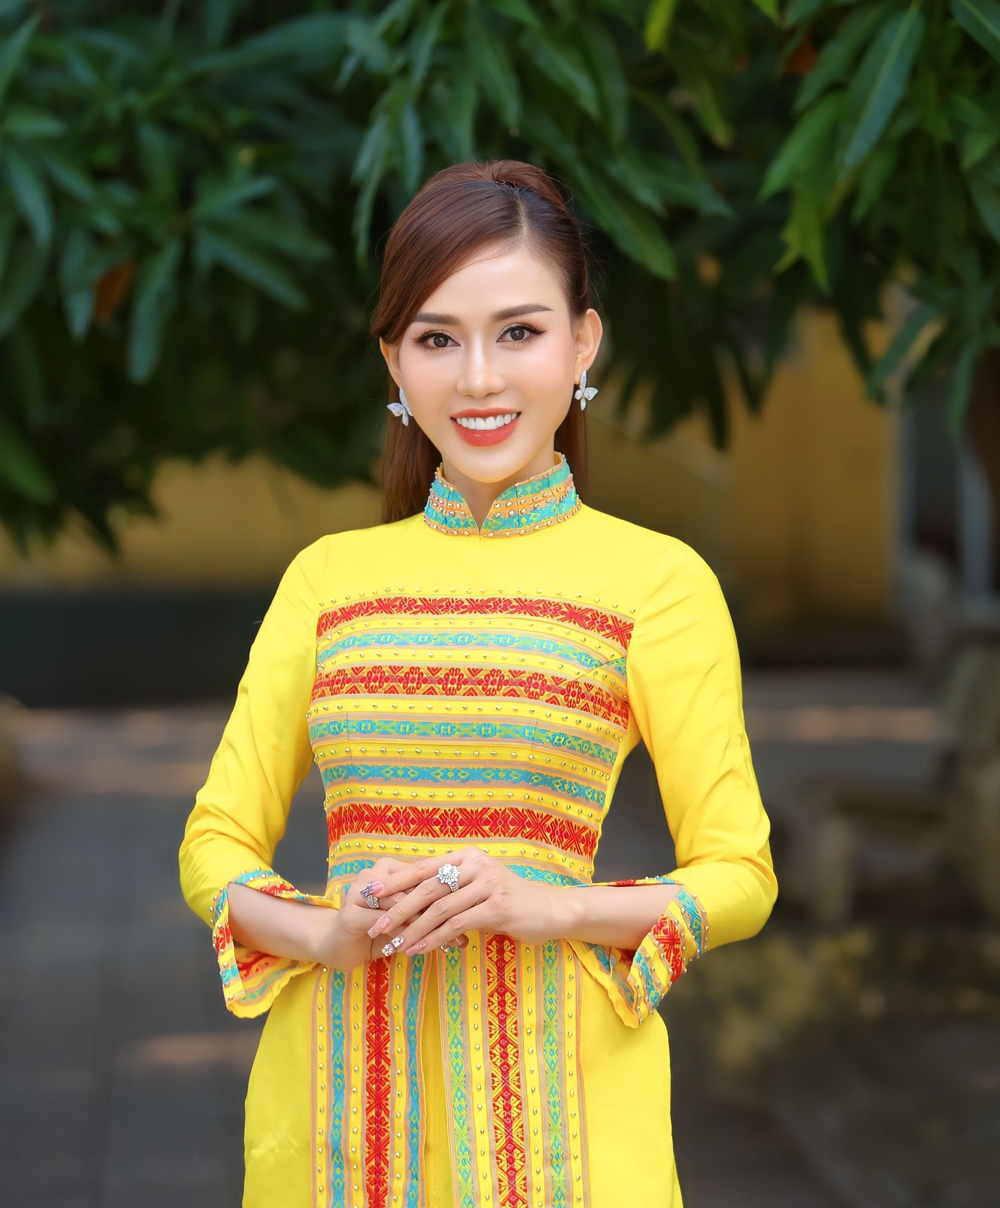 Hoa hậu doanh nhân Đông Nam Á: Đánh giá các ứng viên có khả năng lãnh đạo và tầm nhìn kinh doanh